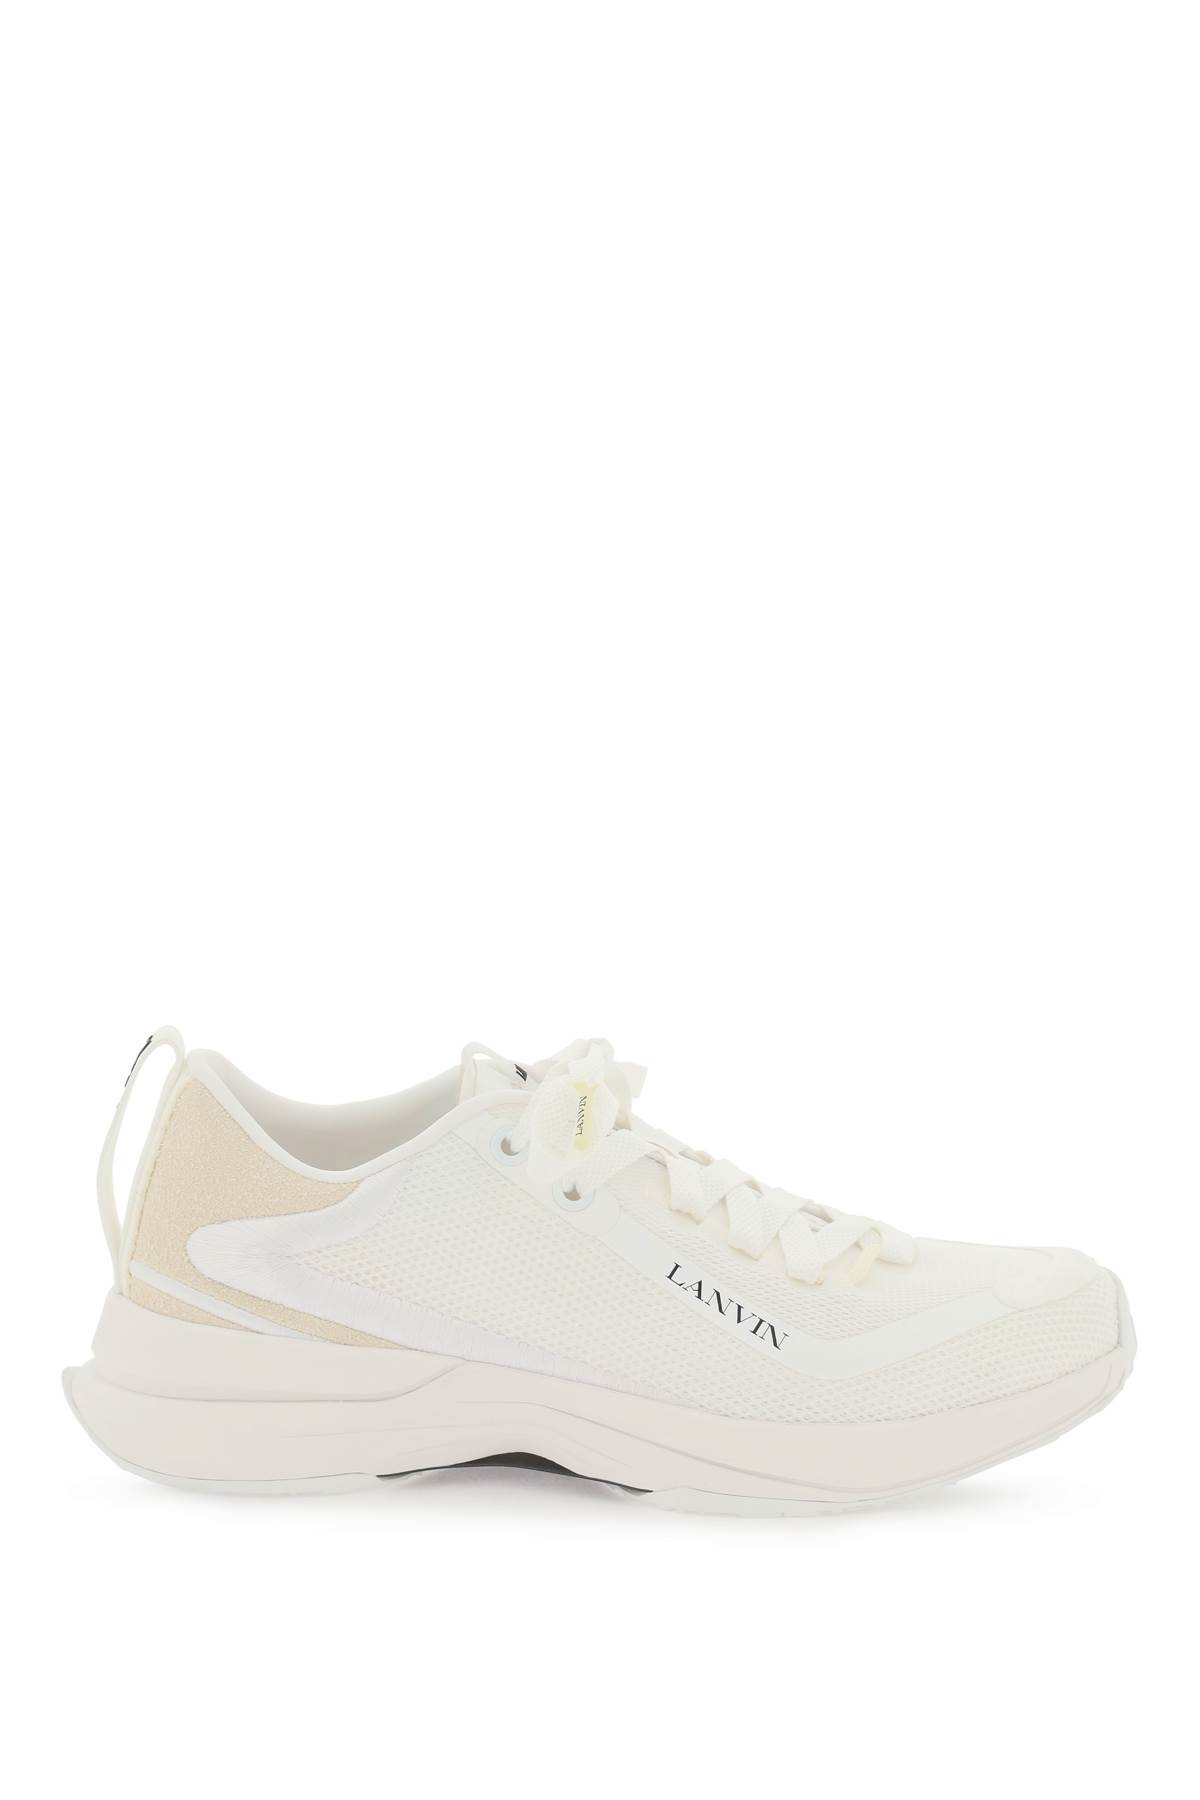 Shop Lanvin Mesh Li Sneakers In White White